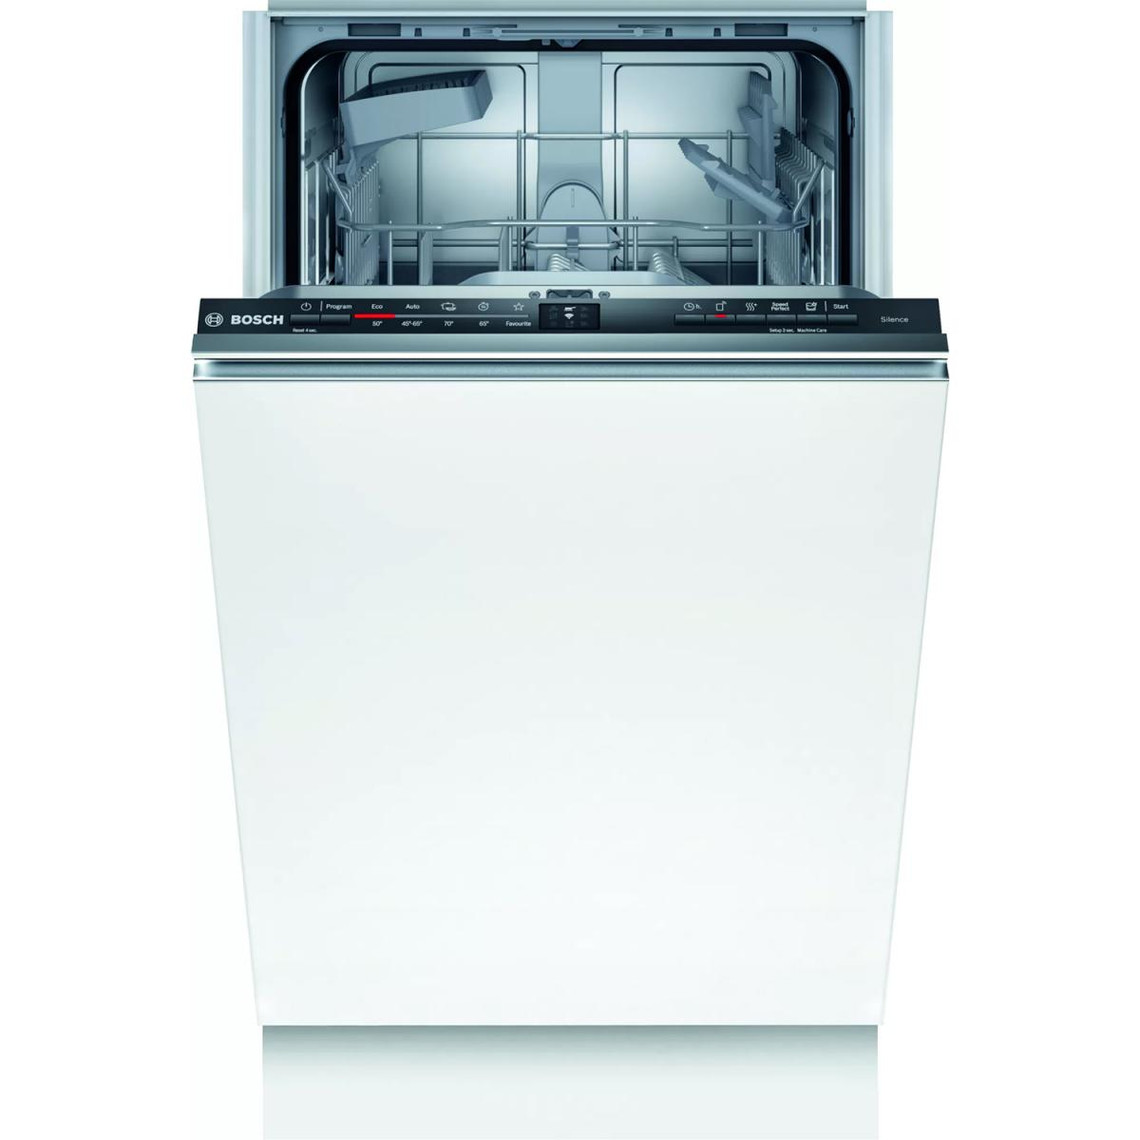 Bosch Lave vaisselle 45cm 9 couverts 48db tout intégrable - spv2ikx10e - BOSCH